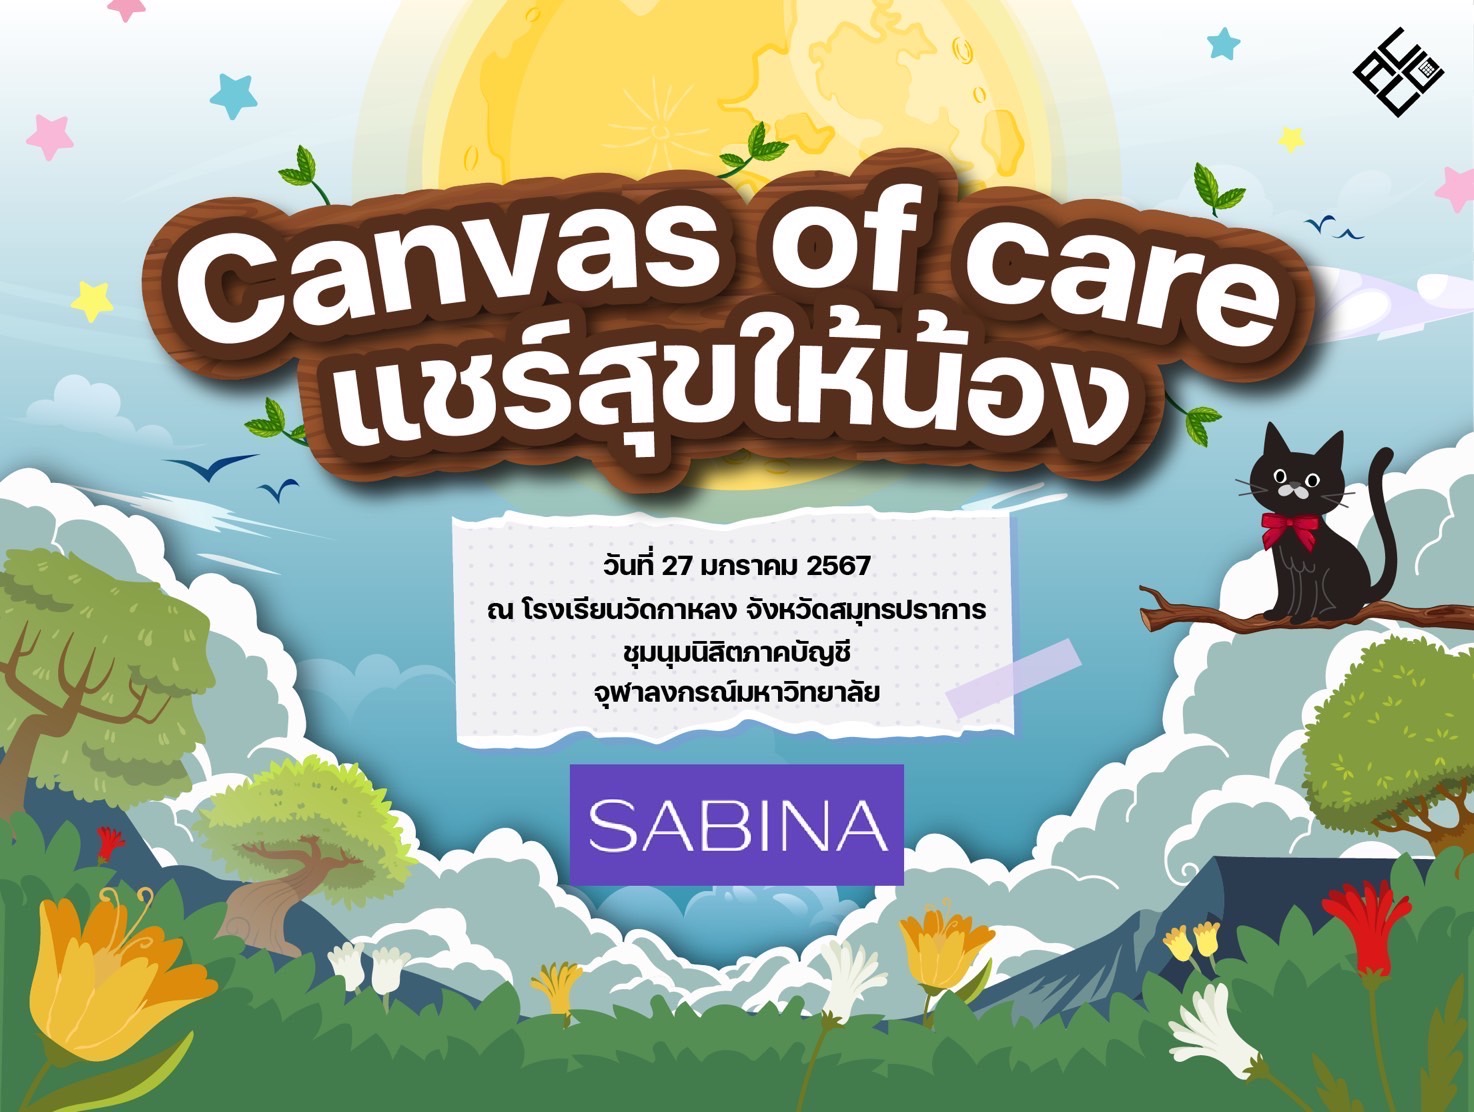 บริษัท ซาบีน่า ฟาร์อีสท์ จำกัด สนับสนุนกิจกรรม โครงการ ‘Canvas of Care แชร์สุขให้น้อง’